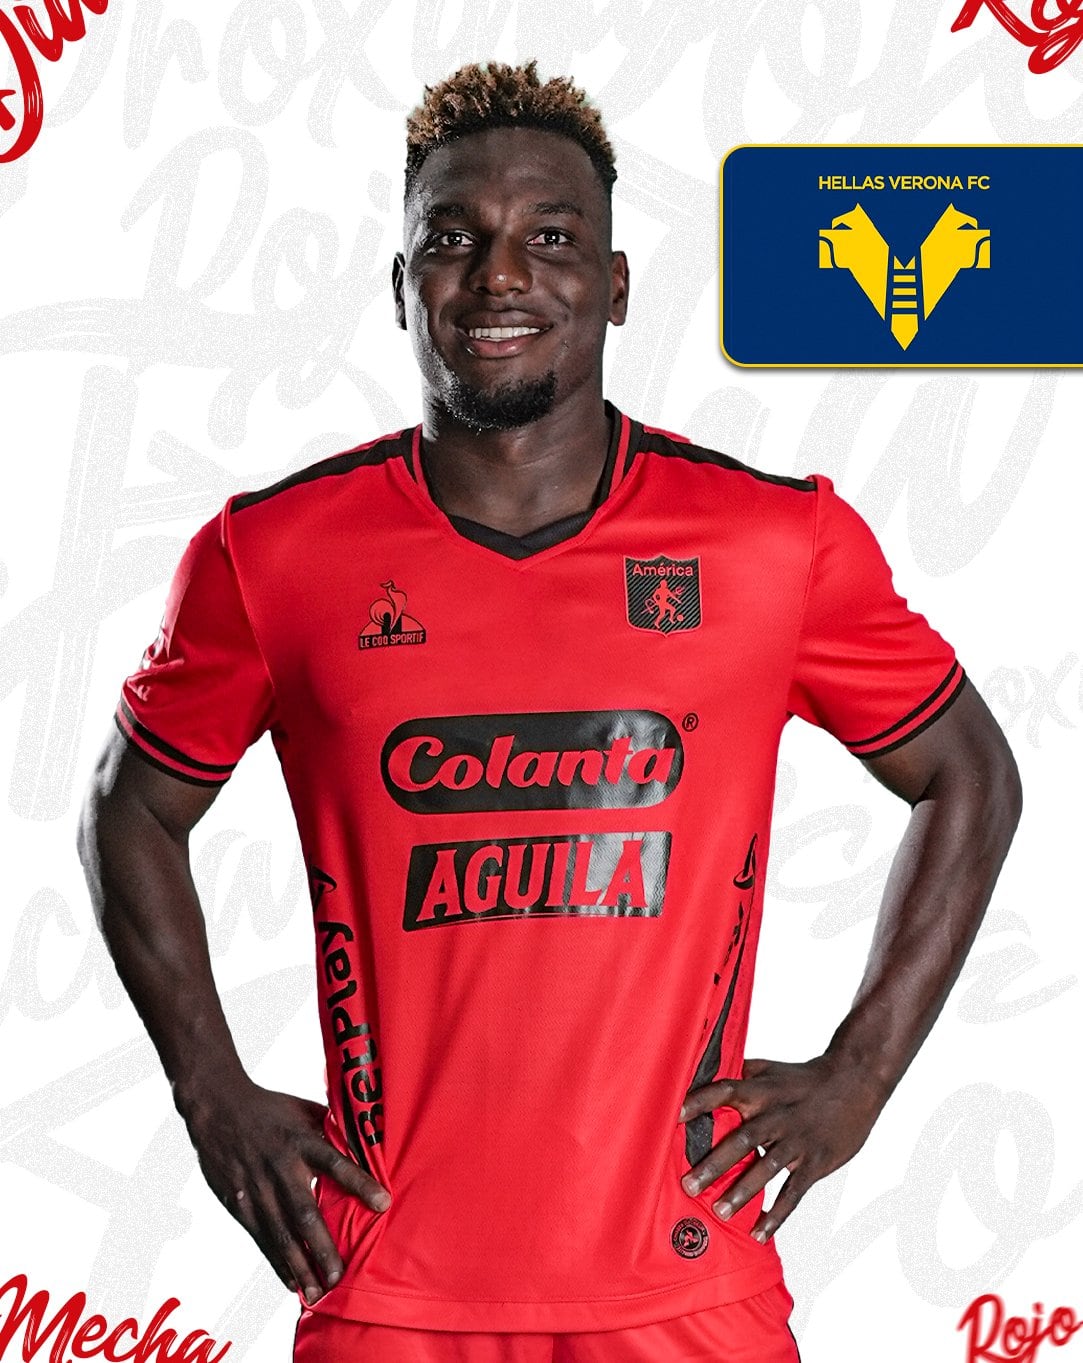 El delantero quién estaba en el Atlético Bucaramanga (actual campeón del fútbol colombiano) fue transferido por parte del conjunto escarlata al Hellas Verona de Italia crédito - @AmericadeCali / X